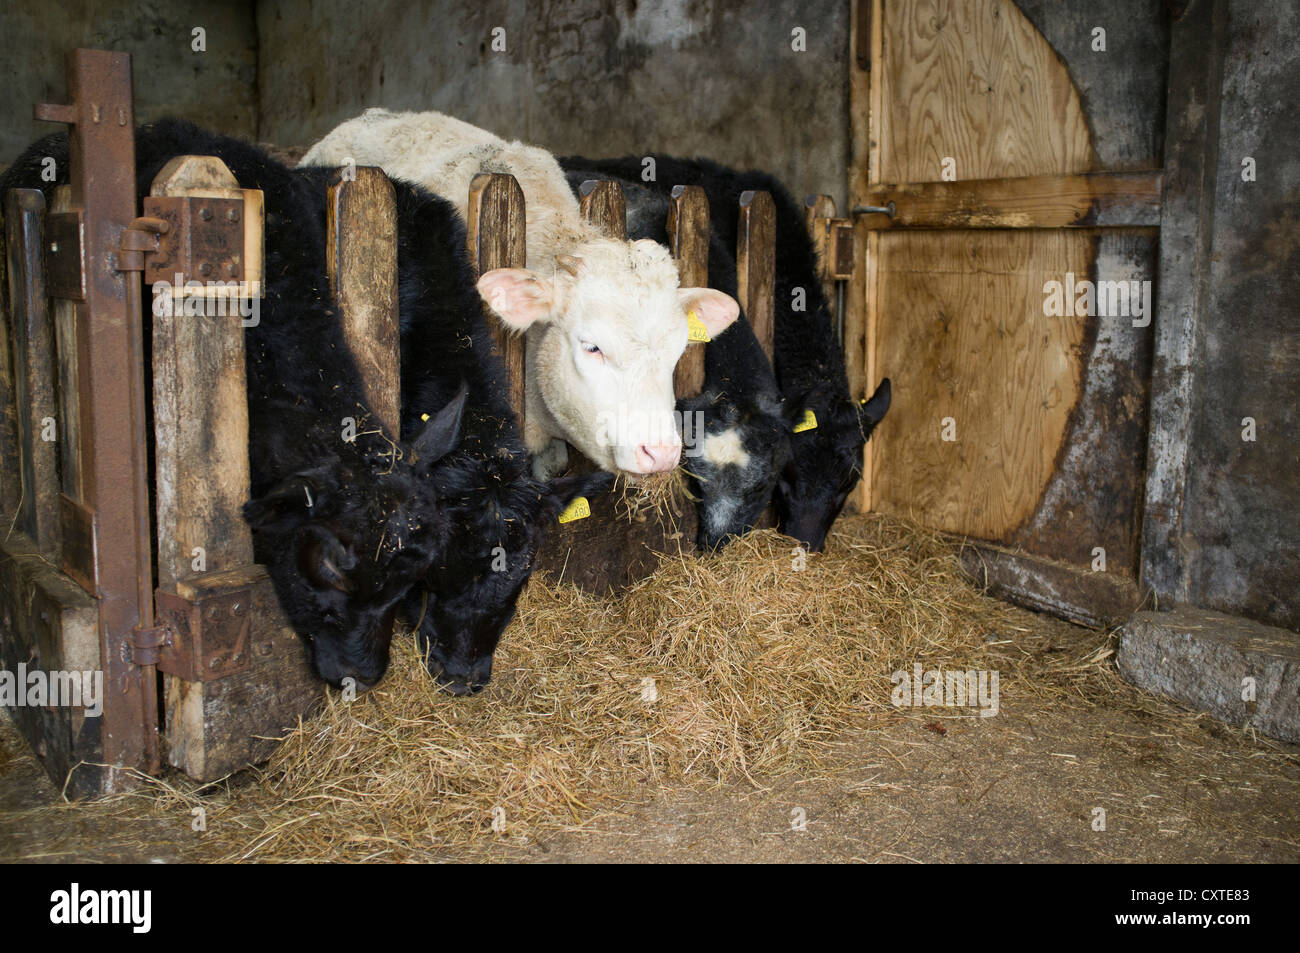 dh Junge Kühe füttern RINDFLEISCH UK Rinder Essen Silage Heuscheune drinnen uk Bauernhof Tierheim schottland Viehzucht schottische Landwirtschaft Tiergebäude im Schuppen Stockfoto